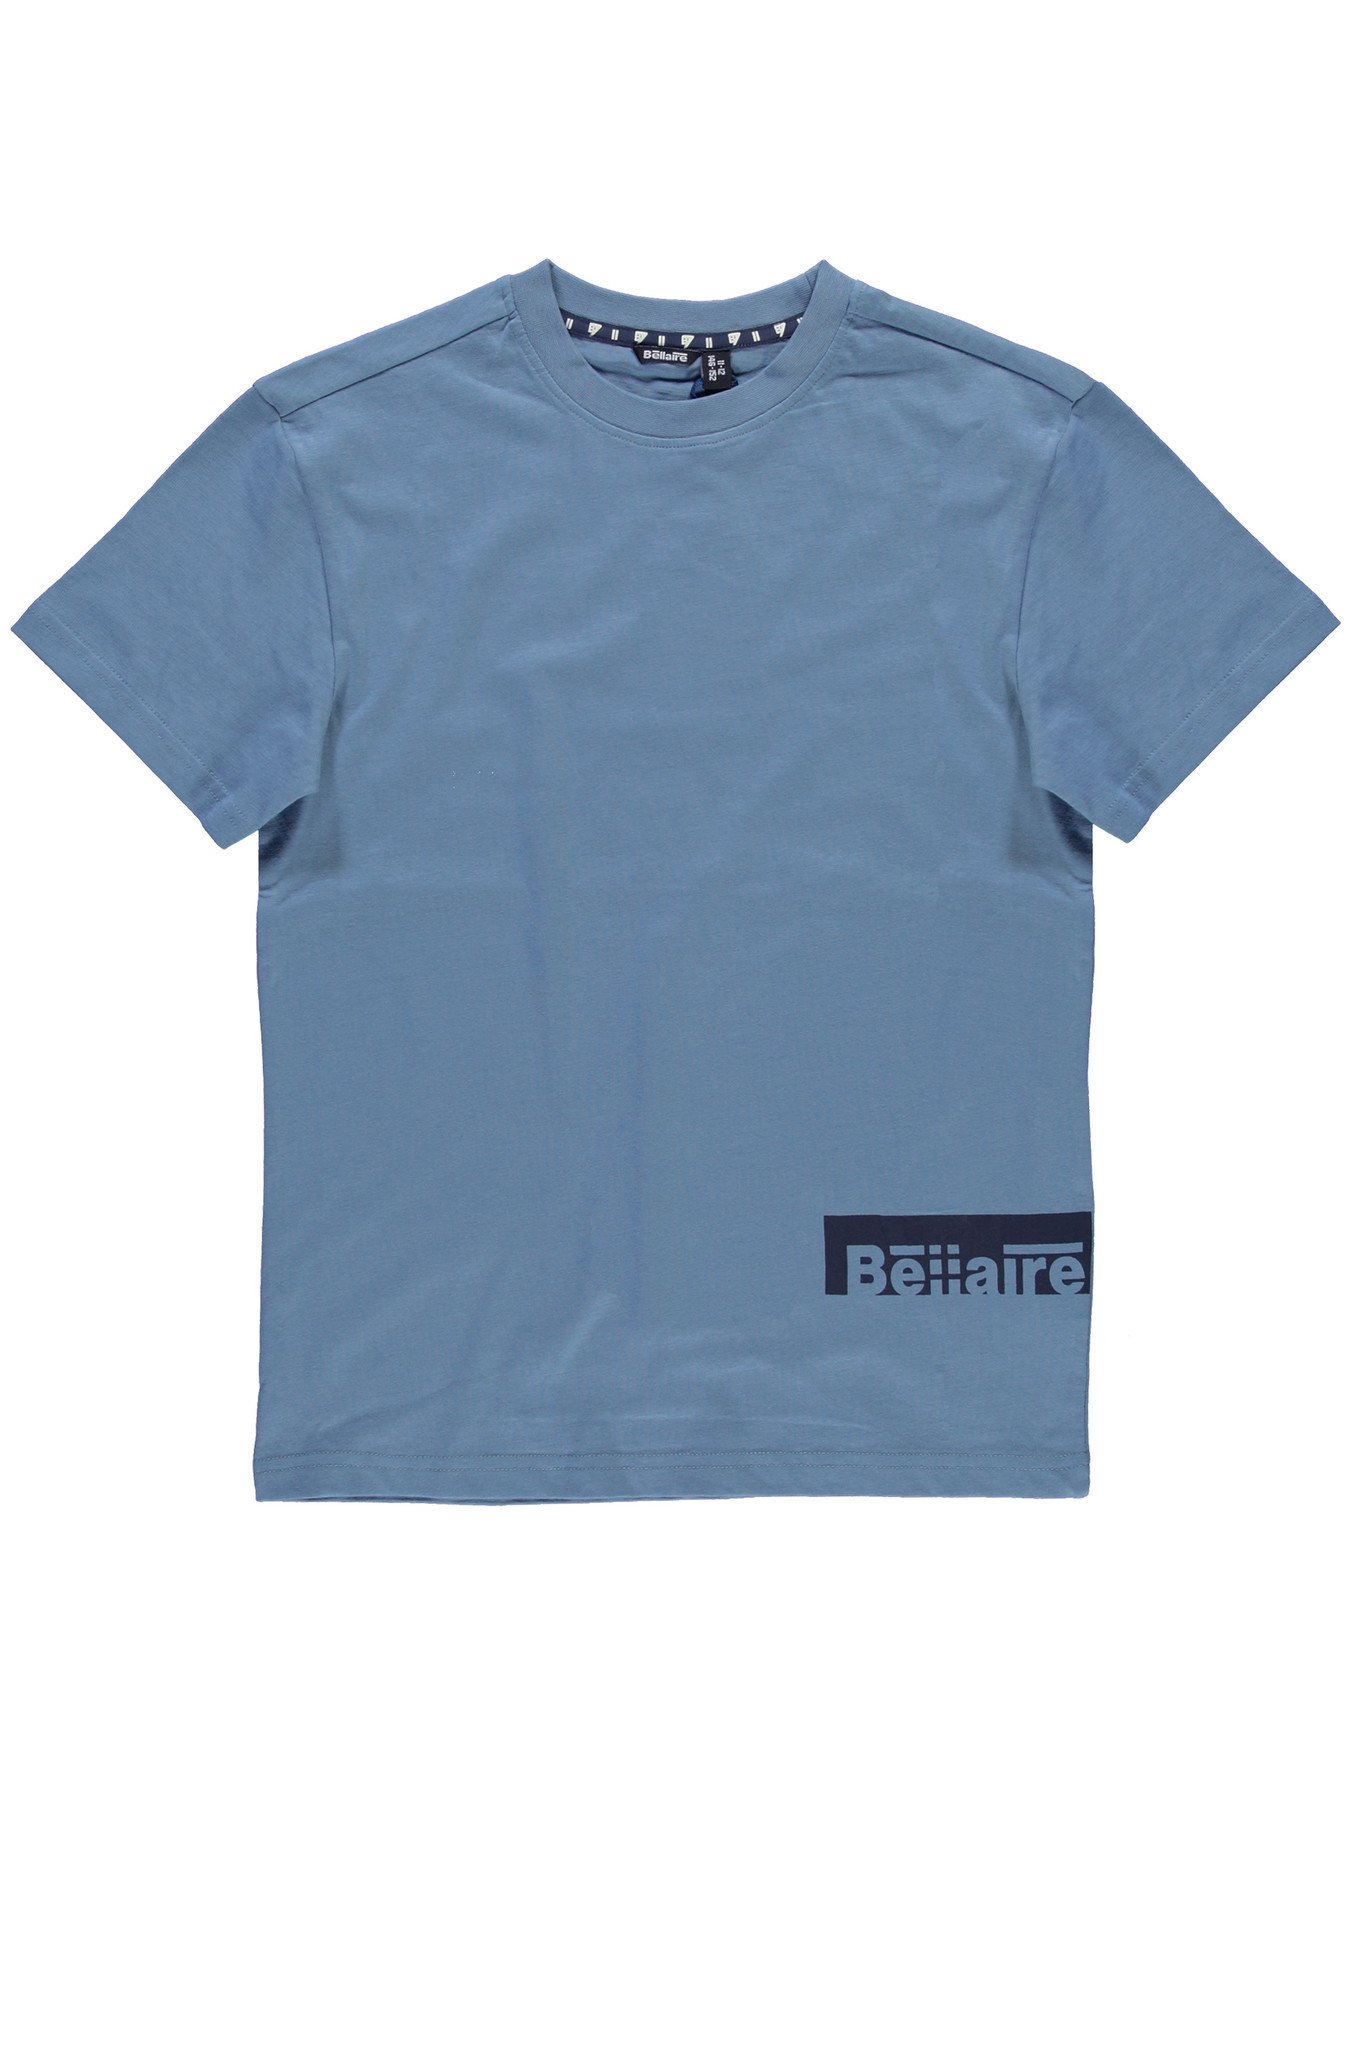 Bellaire Jongens t-shirt - Blauw shadow